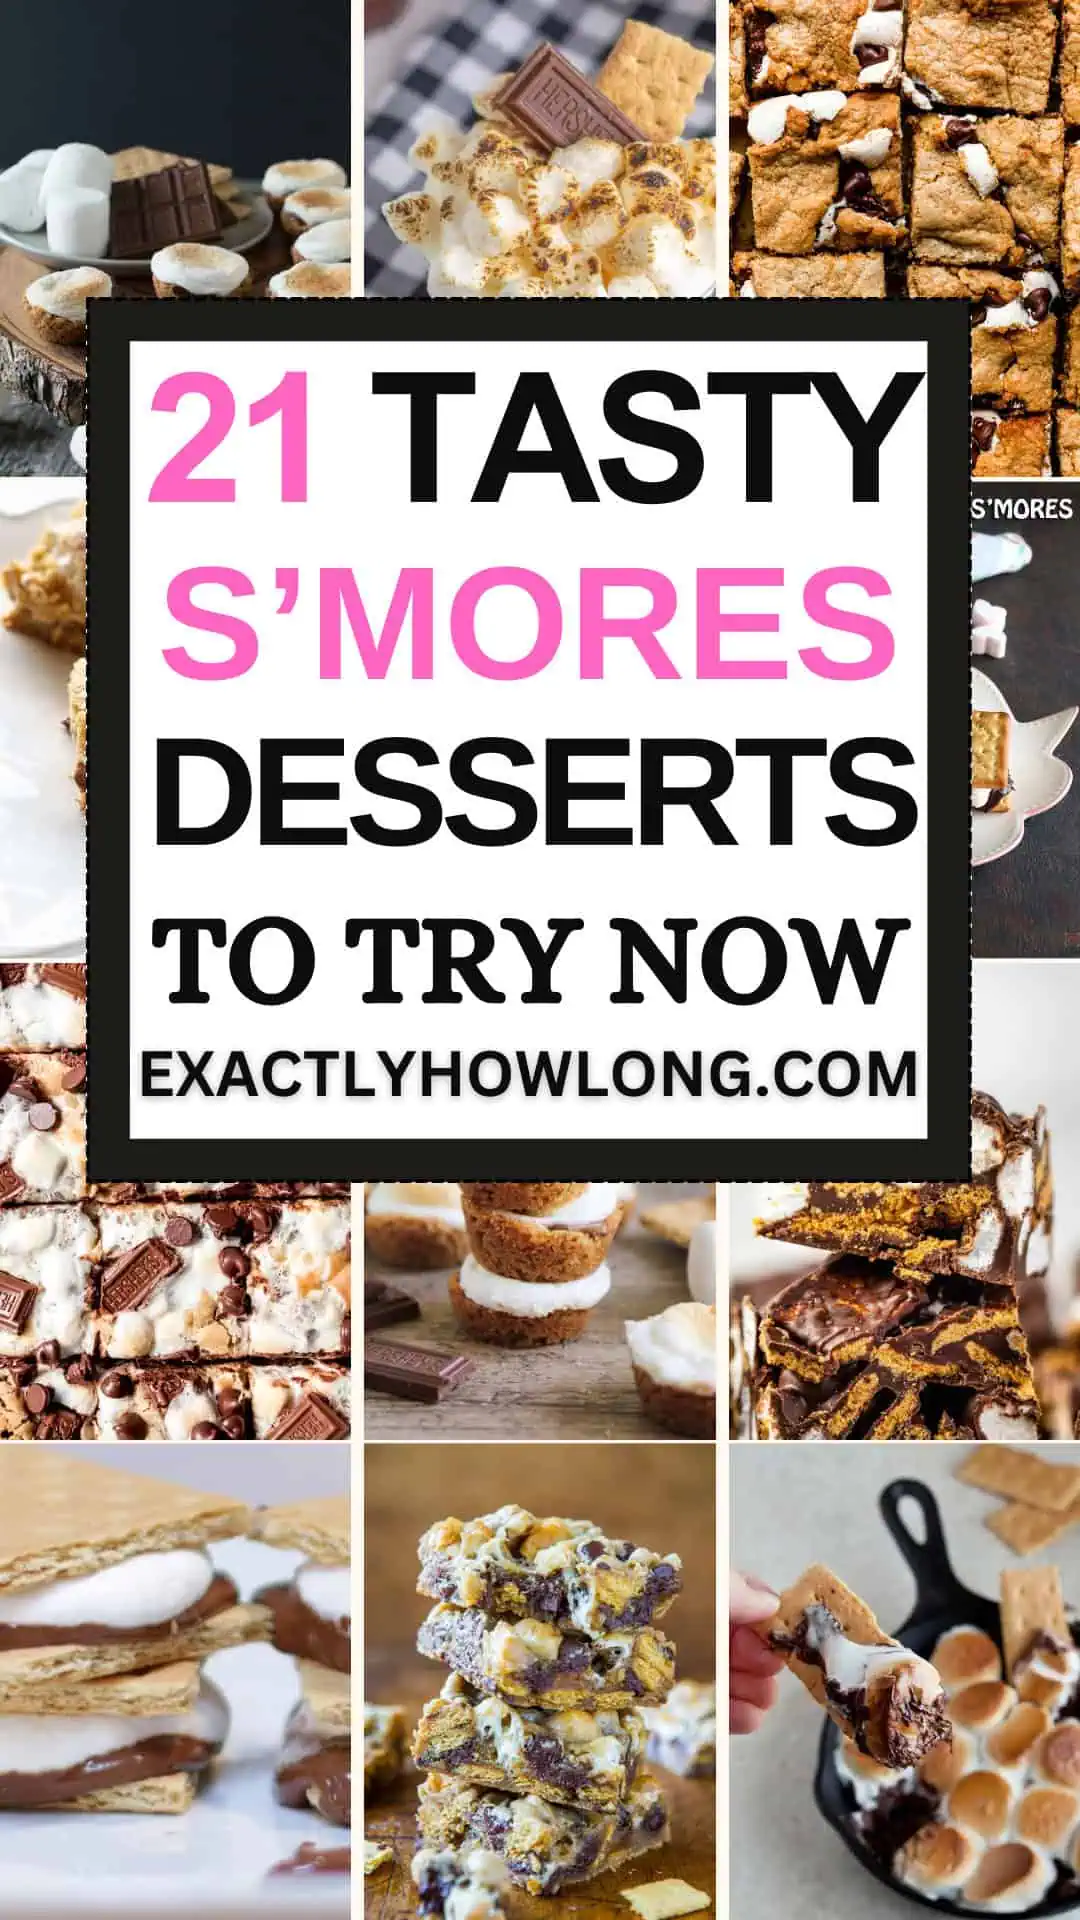 Quick and straightforward smores dessert recipes